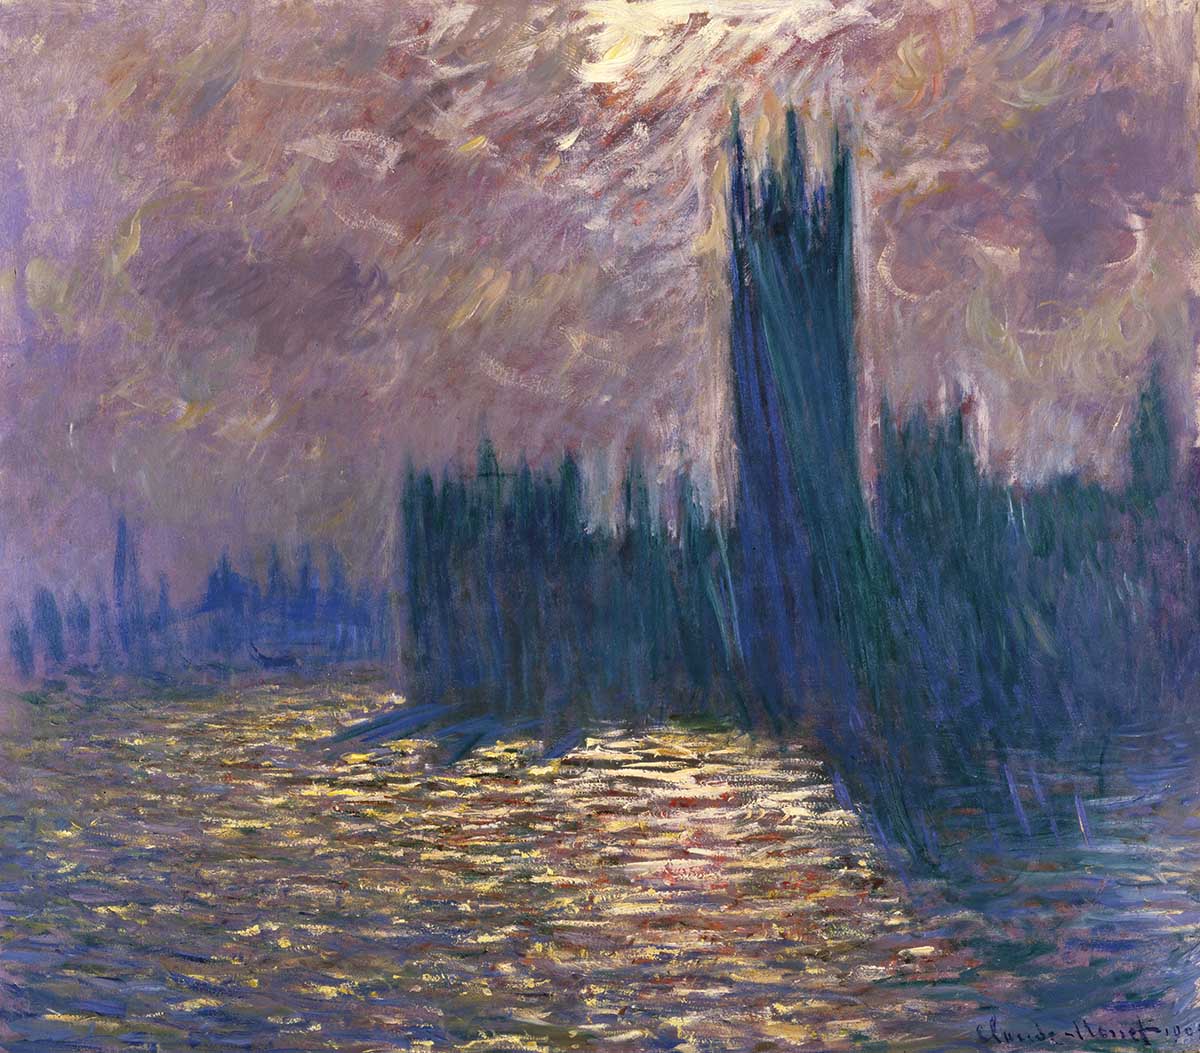 Reflections on the Thames, by Claude Monet, 1905. Musée Marmottan Monet, Paris/Bridgeman Images.